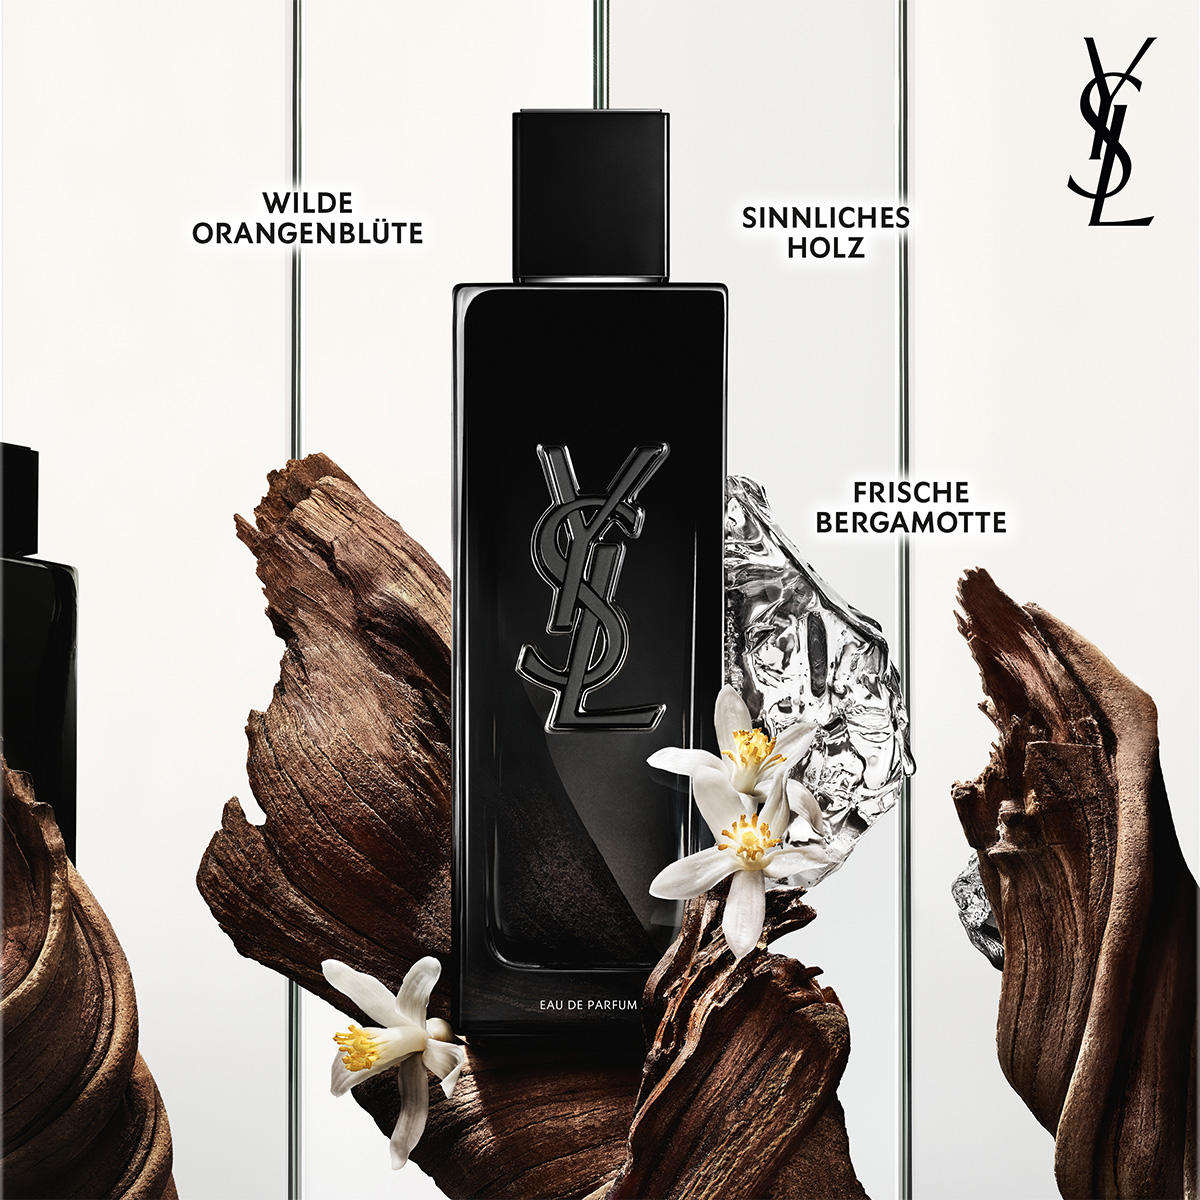 MYSLF by YSL Eau De Parfum rechargeable for Men - Perfume Planet 